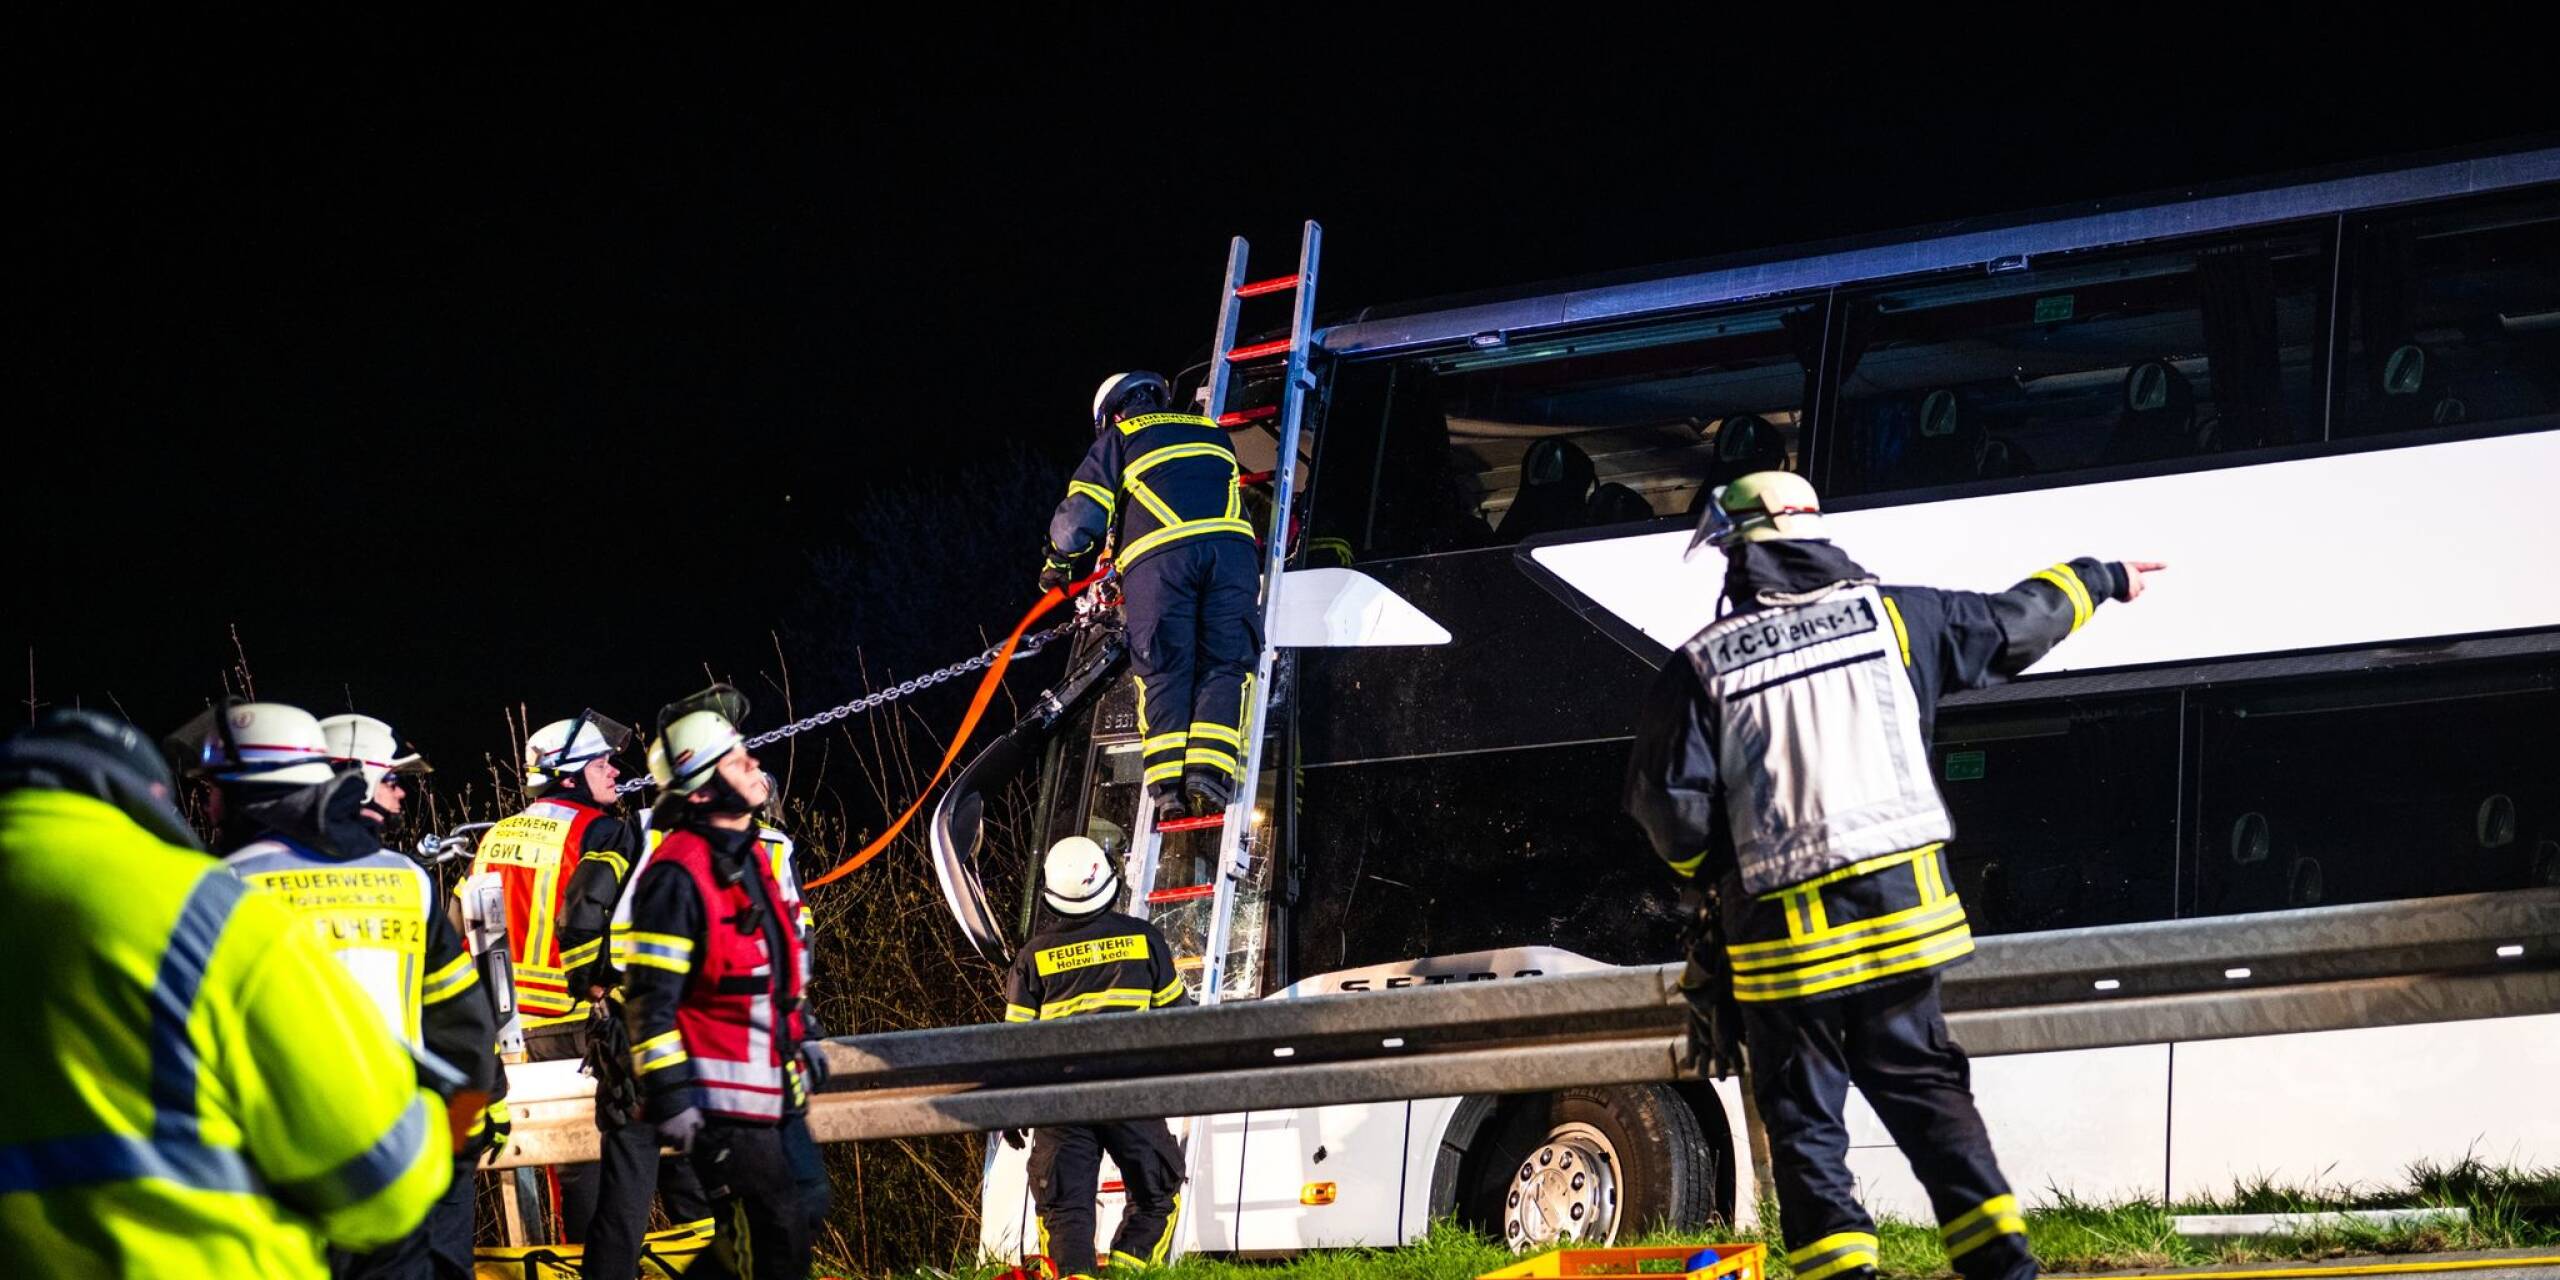 Erst auf der A9, nun auf der A44: Zum zweiten Mal binnen weniger Tage kommt ein Reisebus von einer Autobahn ab und stürzt auf die Seite. Mehr als 20 Menschen haben sich bei dem Unglück in Nordrhein-Westfalen verletzt.